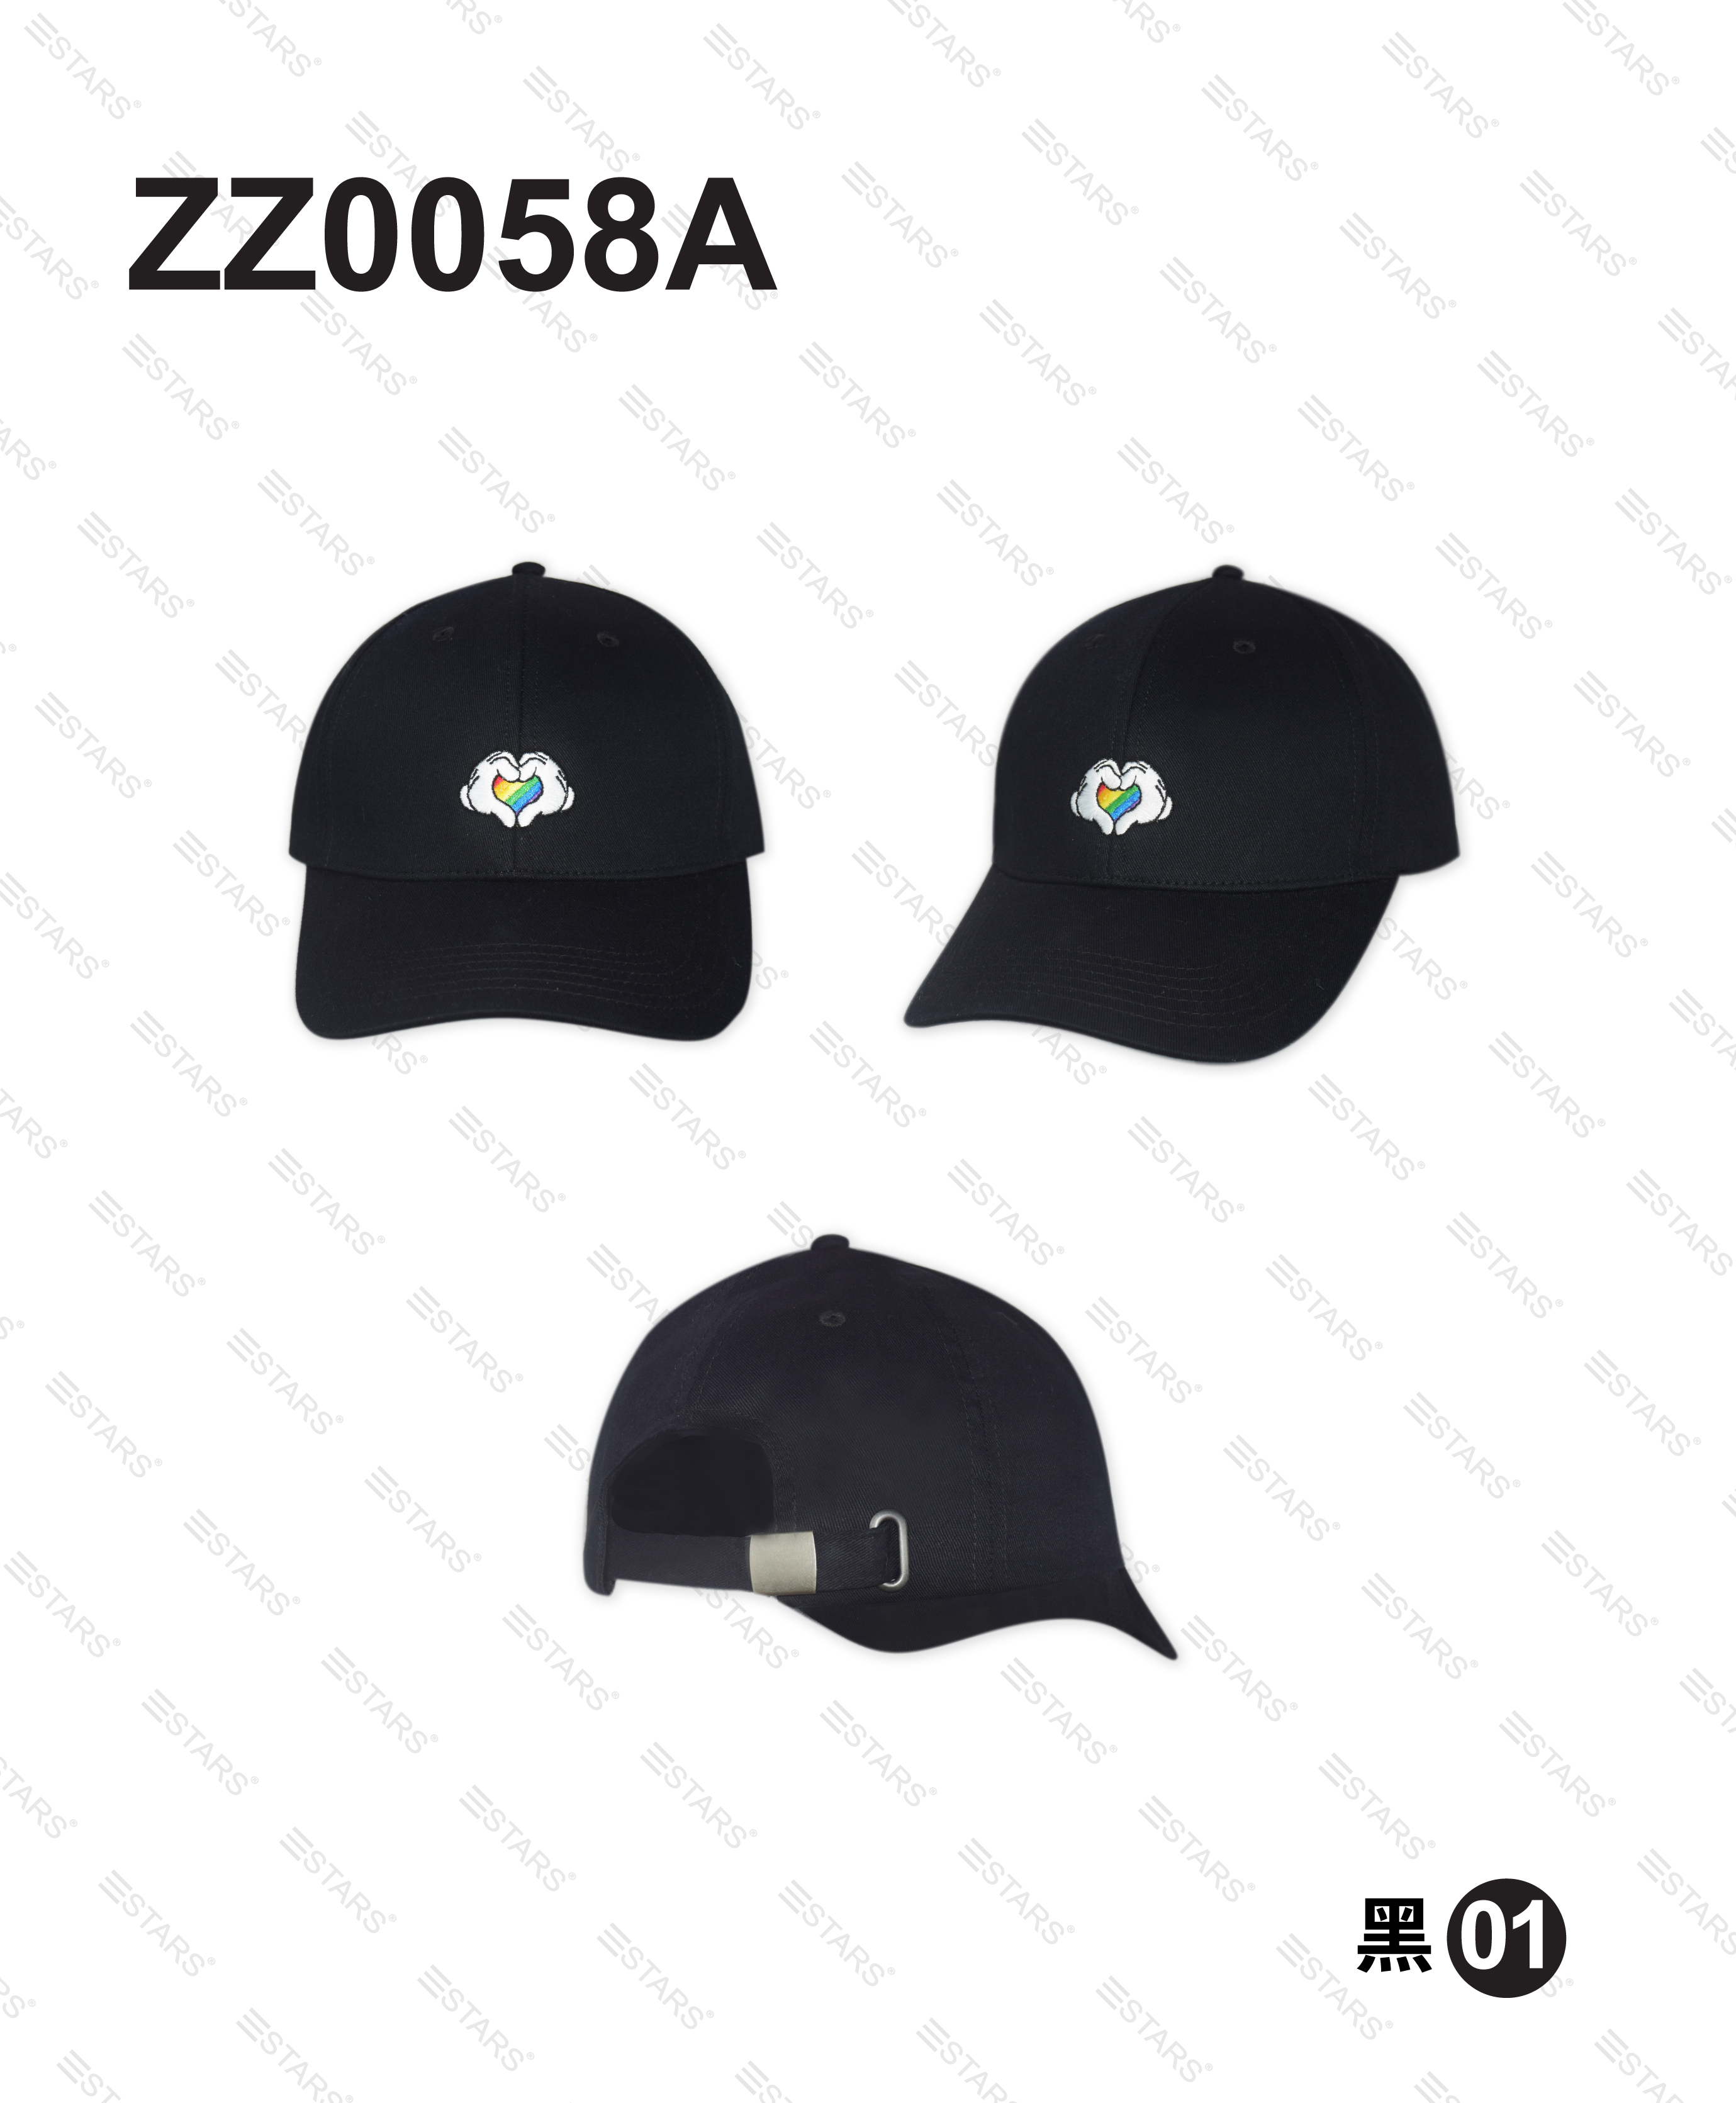 ZZ0058A 彩虹米奇球帽 (黑)